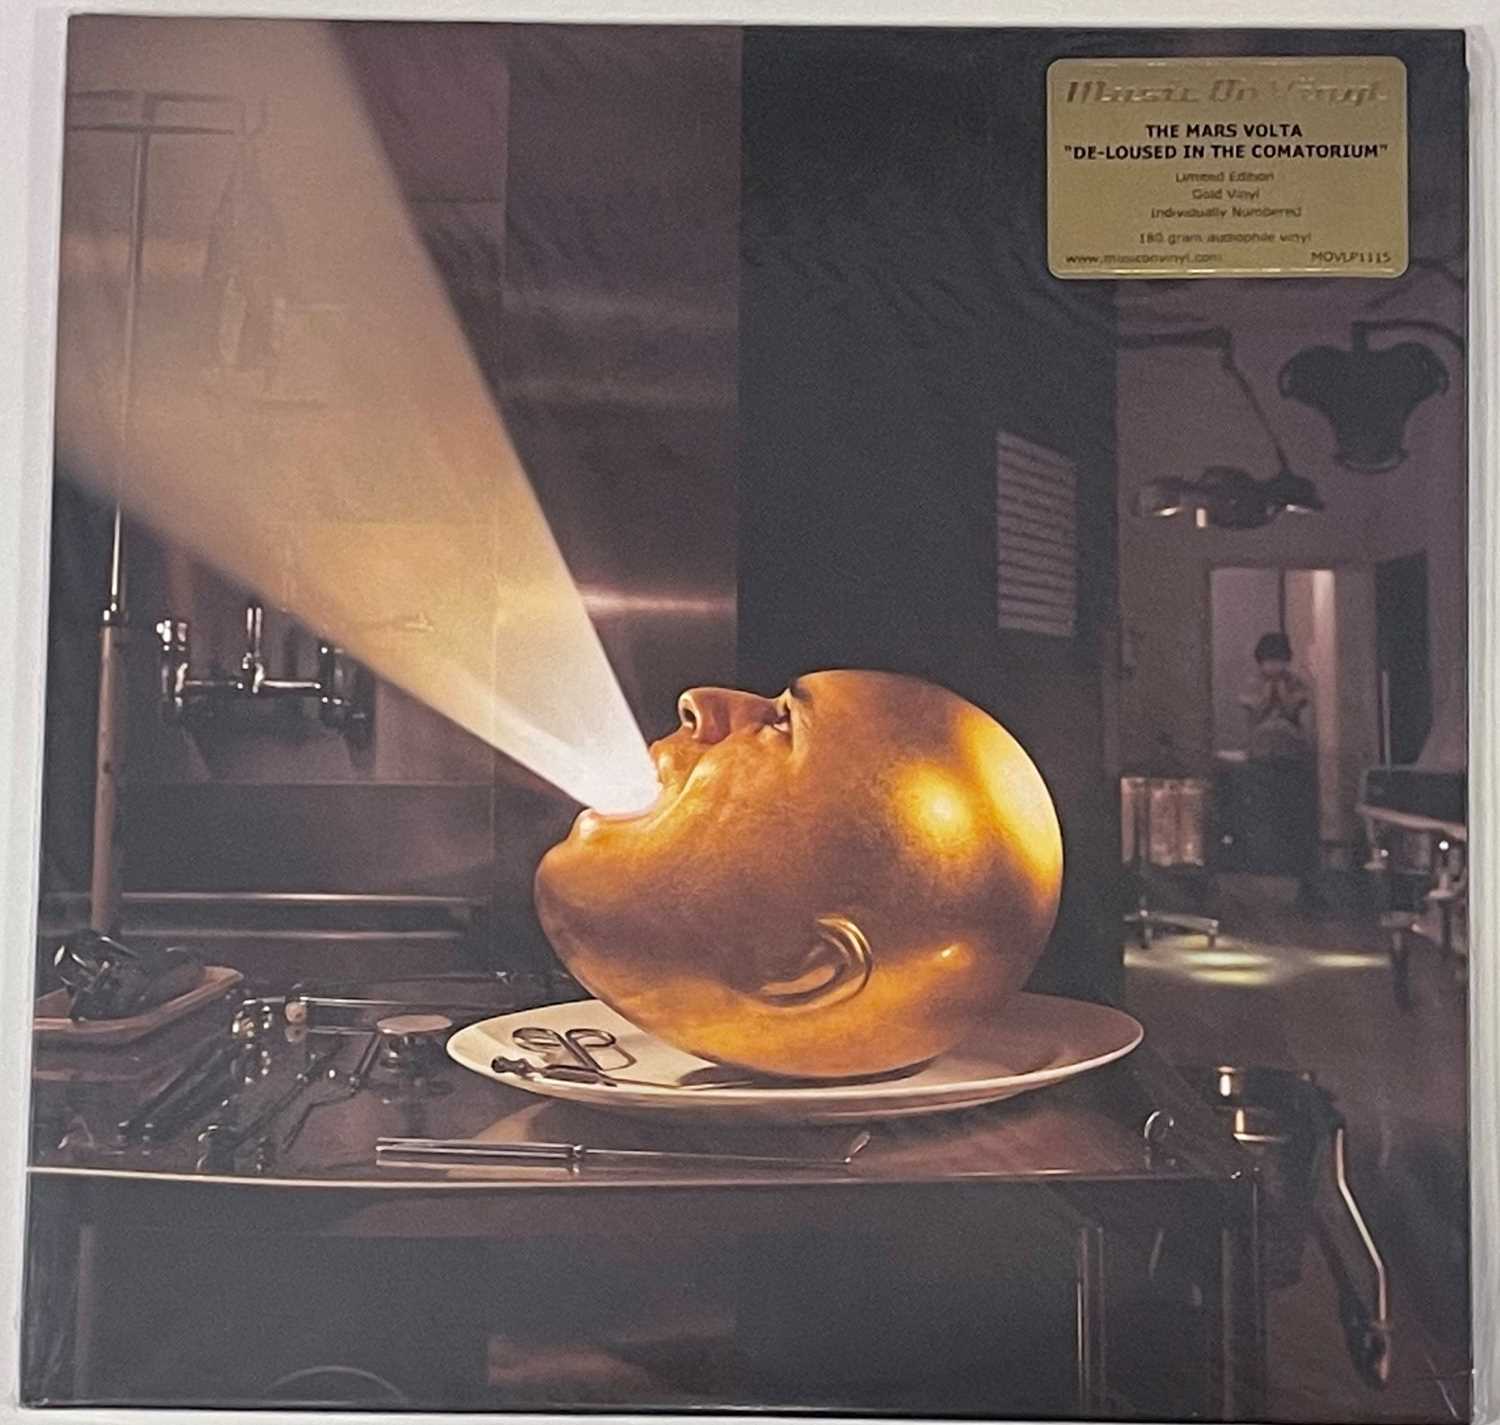 THE MARS VOLTA - DE-LOUSED IN THE COMATORIUM LP (LTD EDITION 2014 GOLD VINYL PRESSING - MOVLP1115)